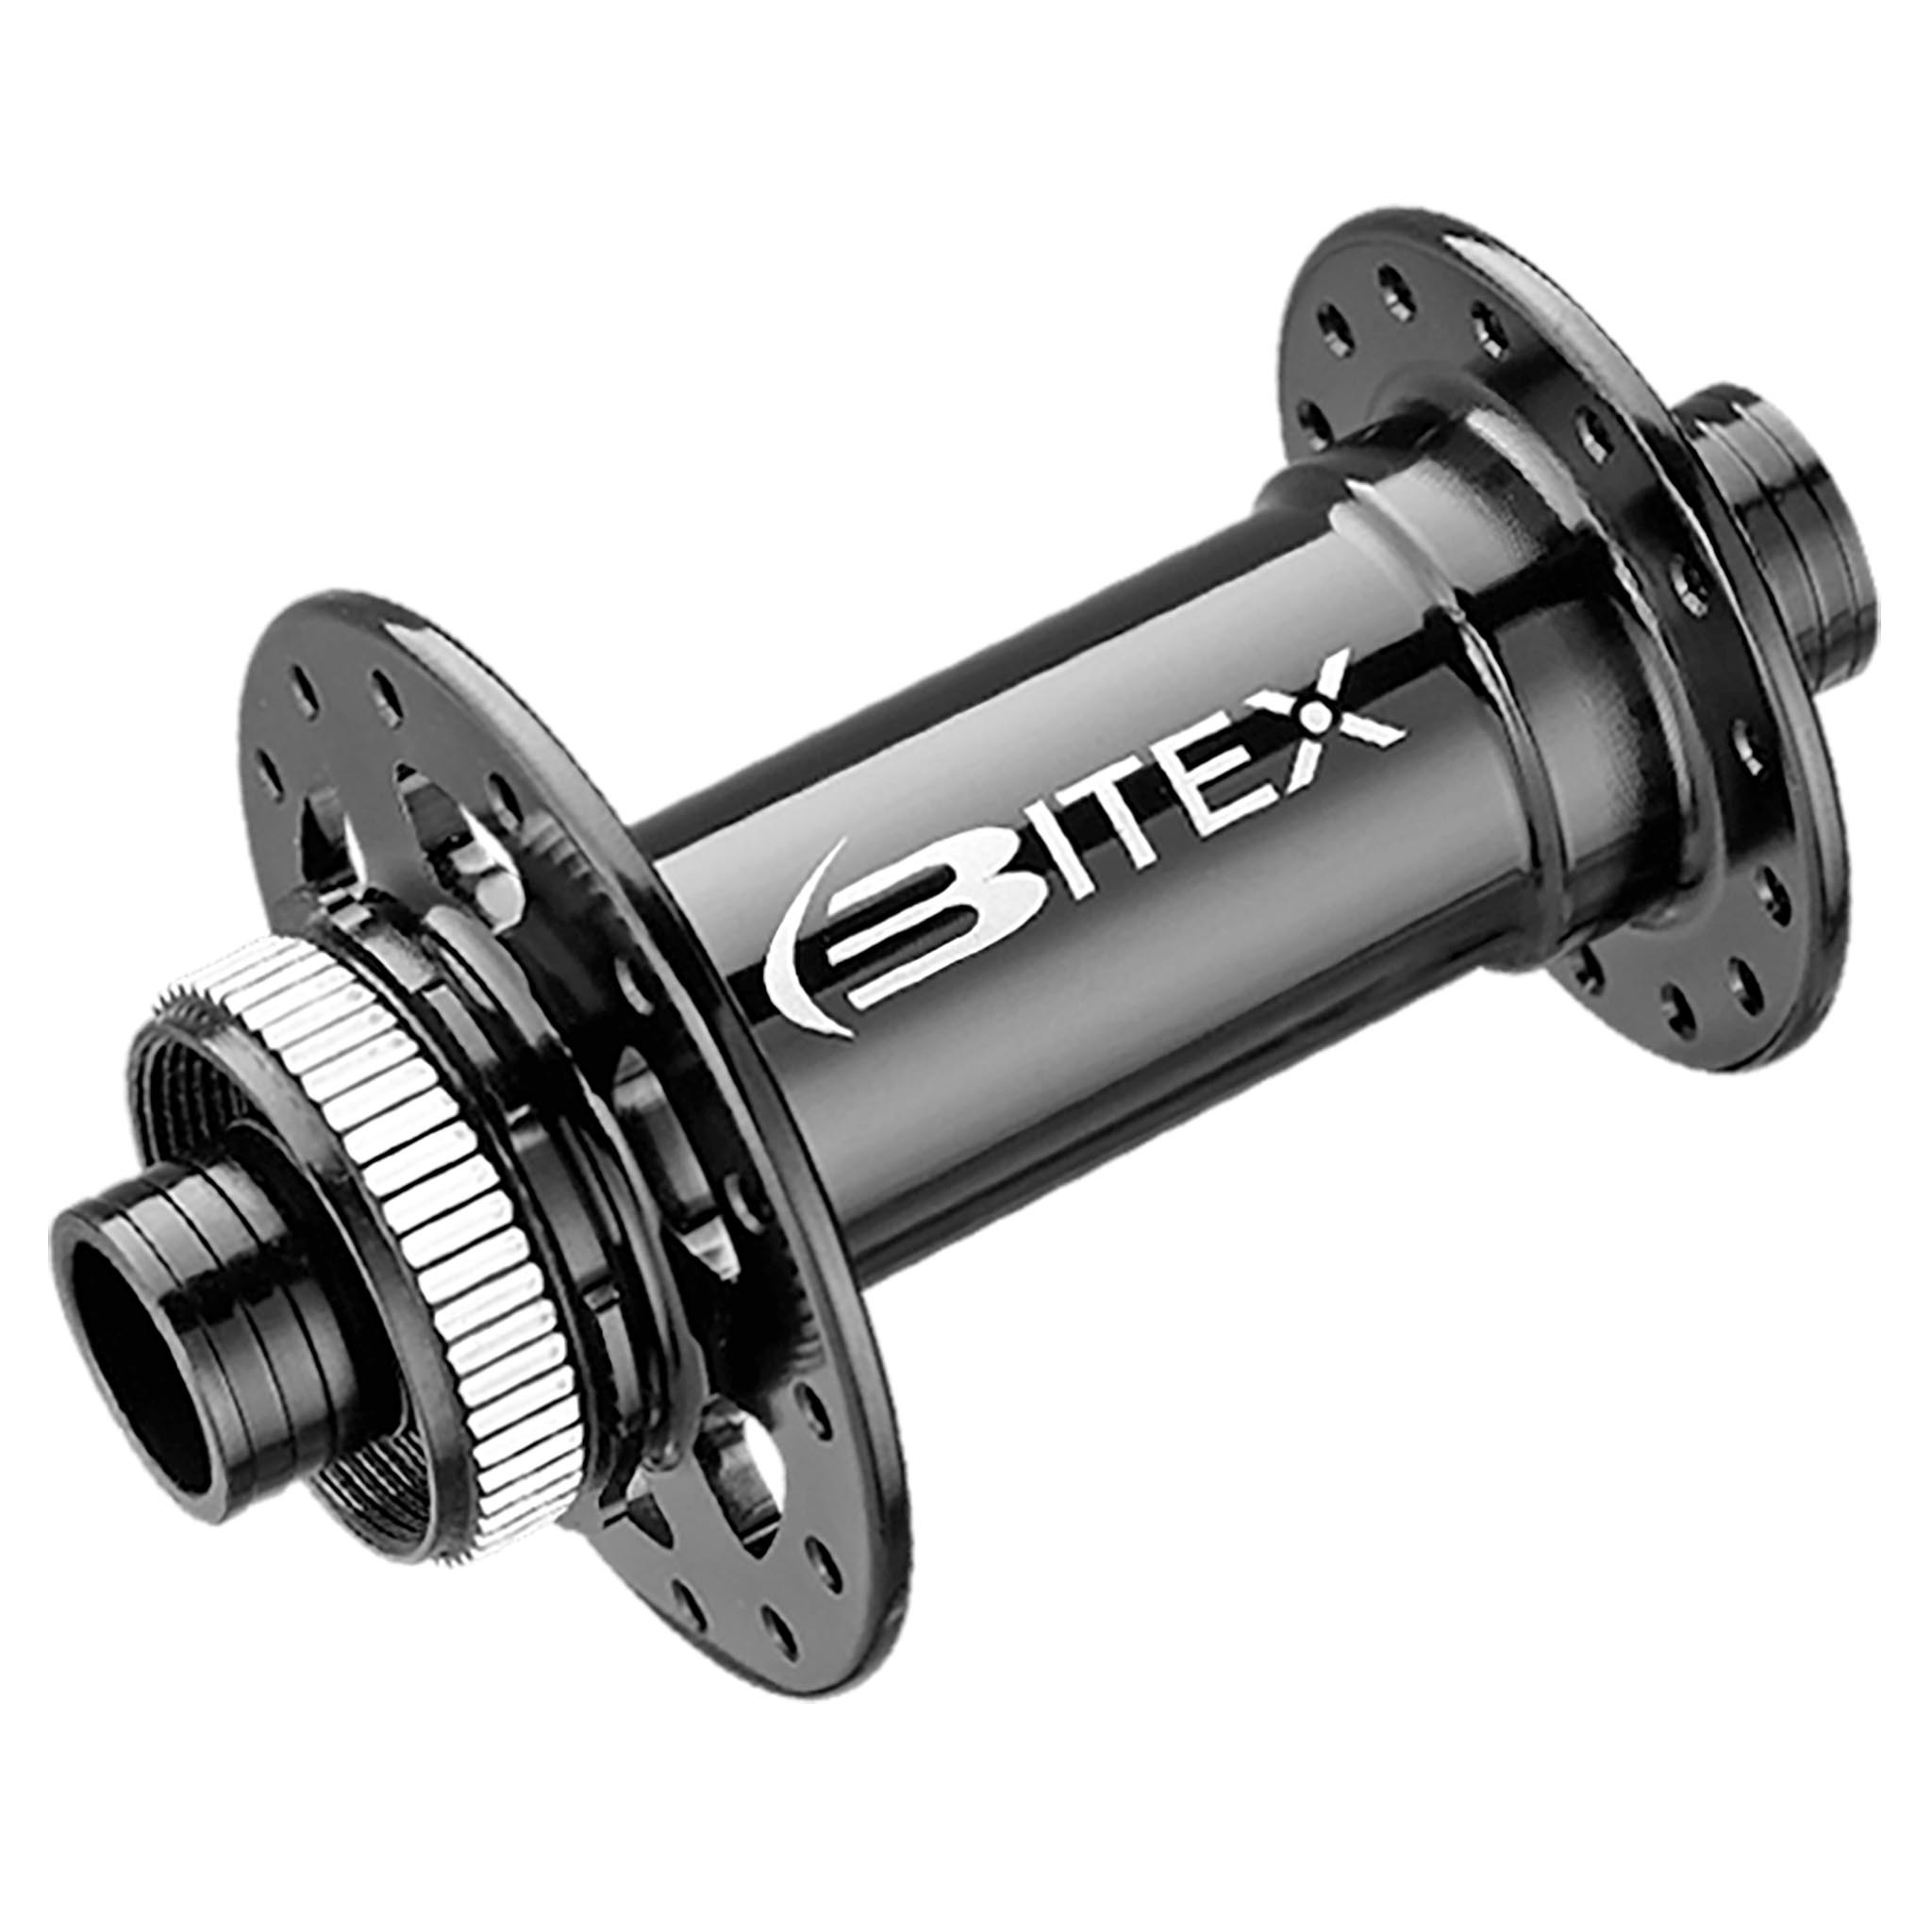 Bitex Disc Hub Front, CL (BX212F) 15x110mm Boost, 32h, Black